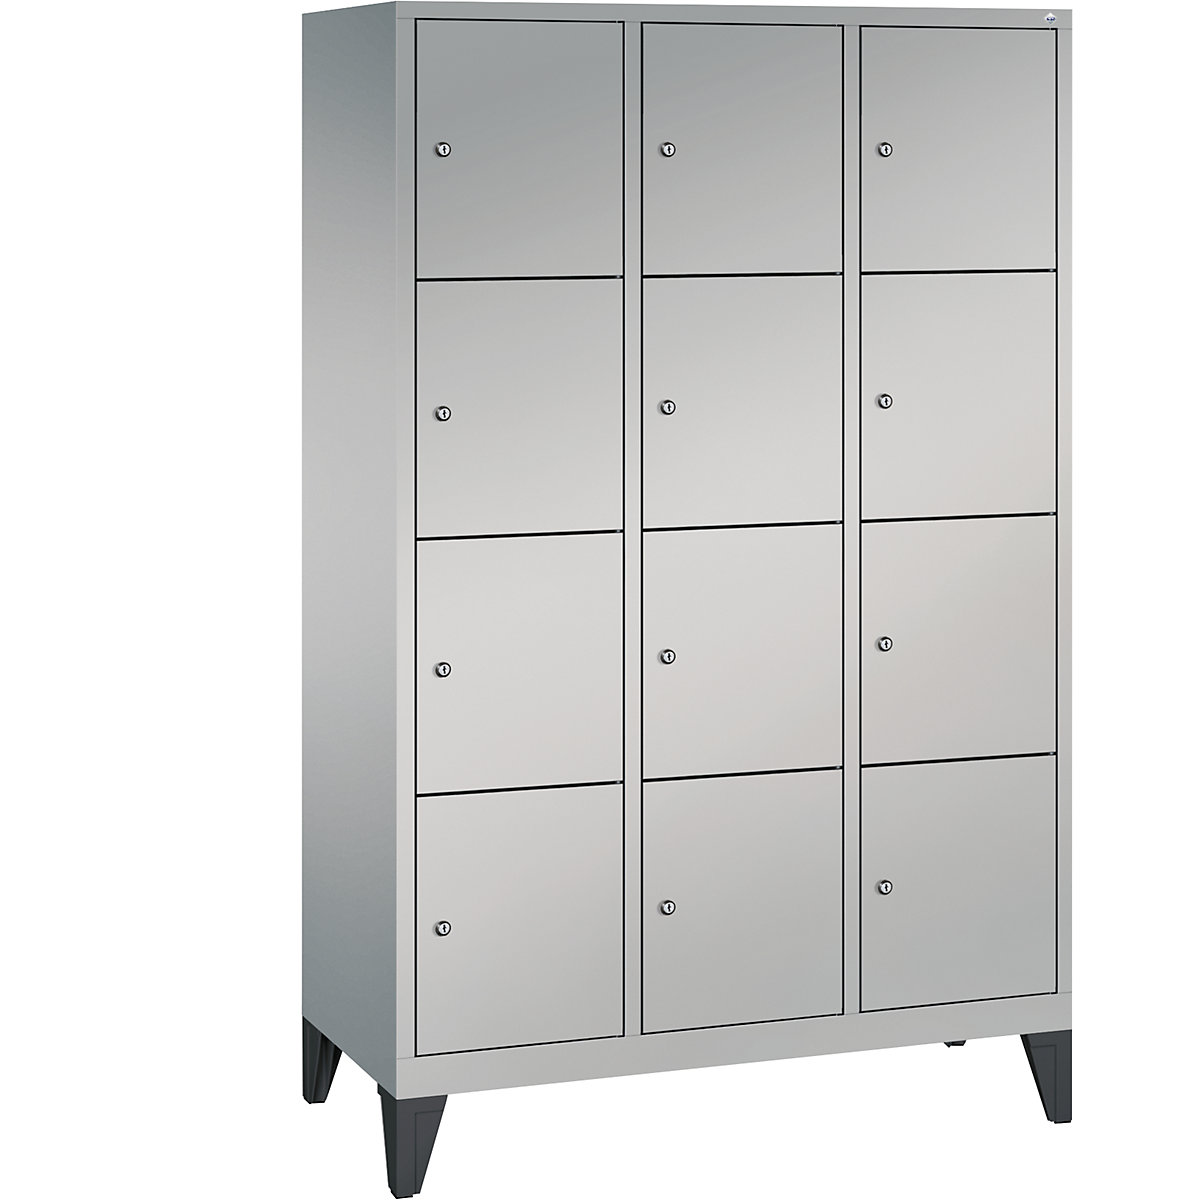 CLASSIC locker unit with feet – C+P, 3 compartments, 4 shelf compartments each, compartment width 400 mm, white aluminium-13